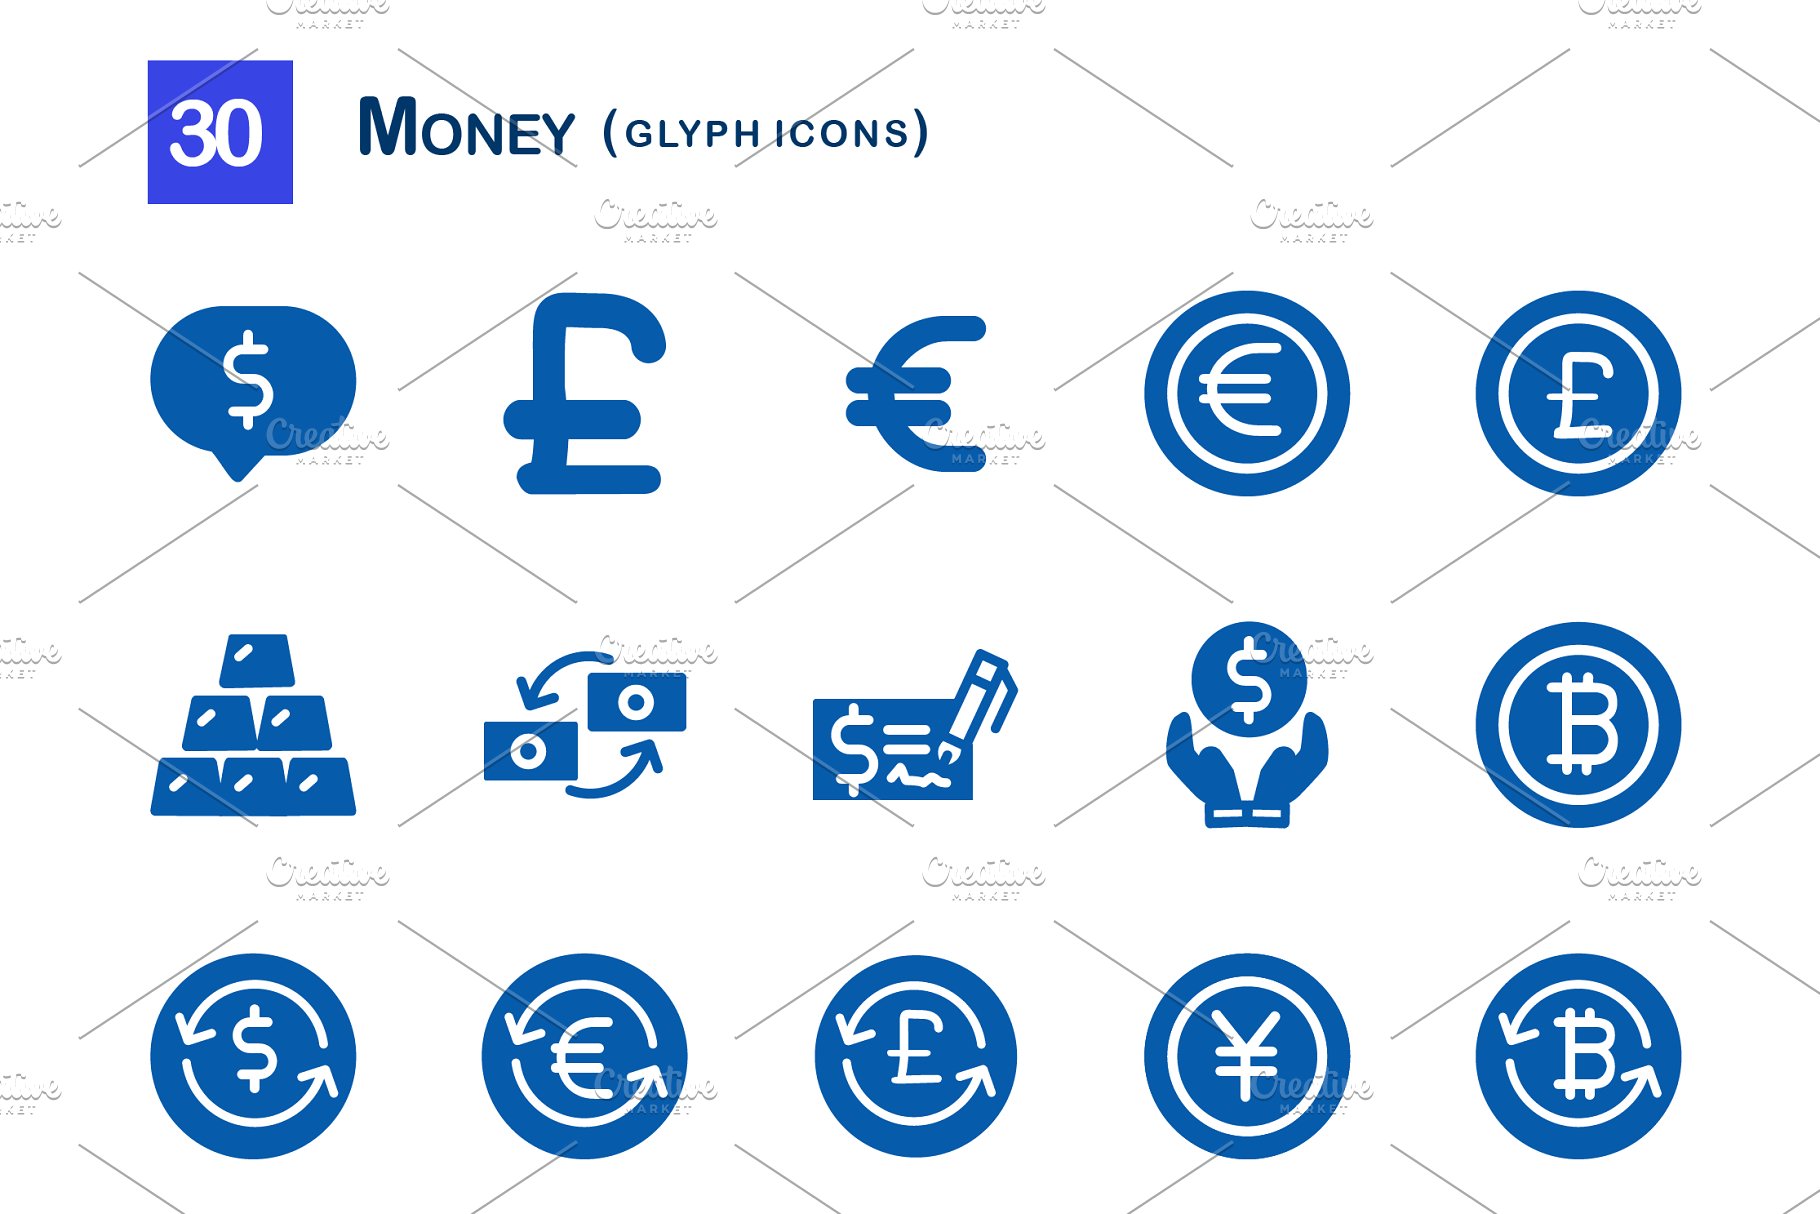 30枚投资金融网站APP字体图标  30 Money Glyph Icons插图(1)